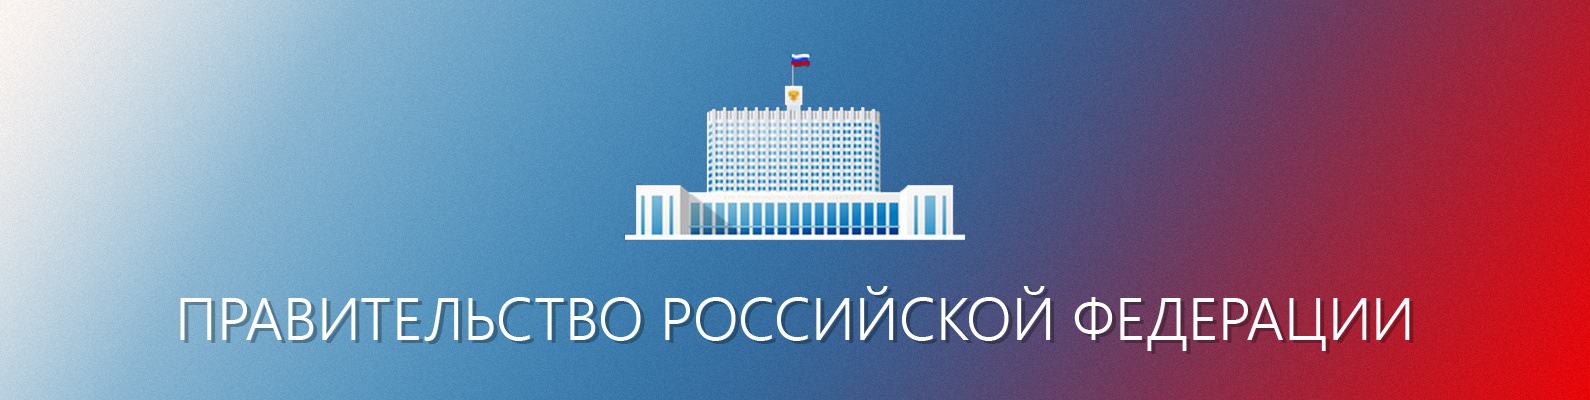 Официальный сайт Правительства Российской Федерации.